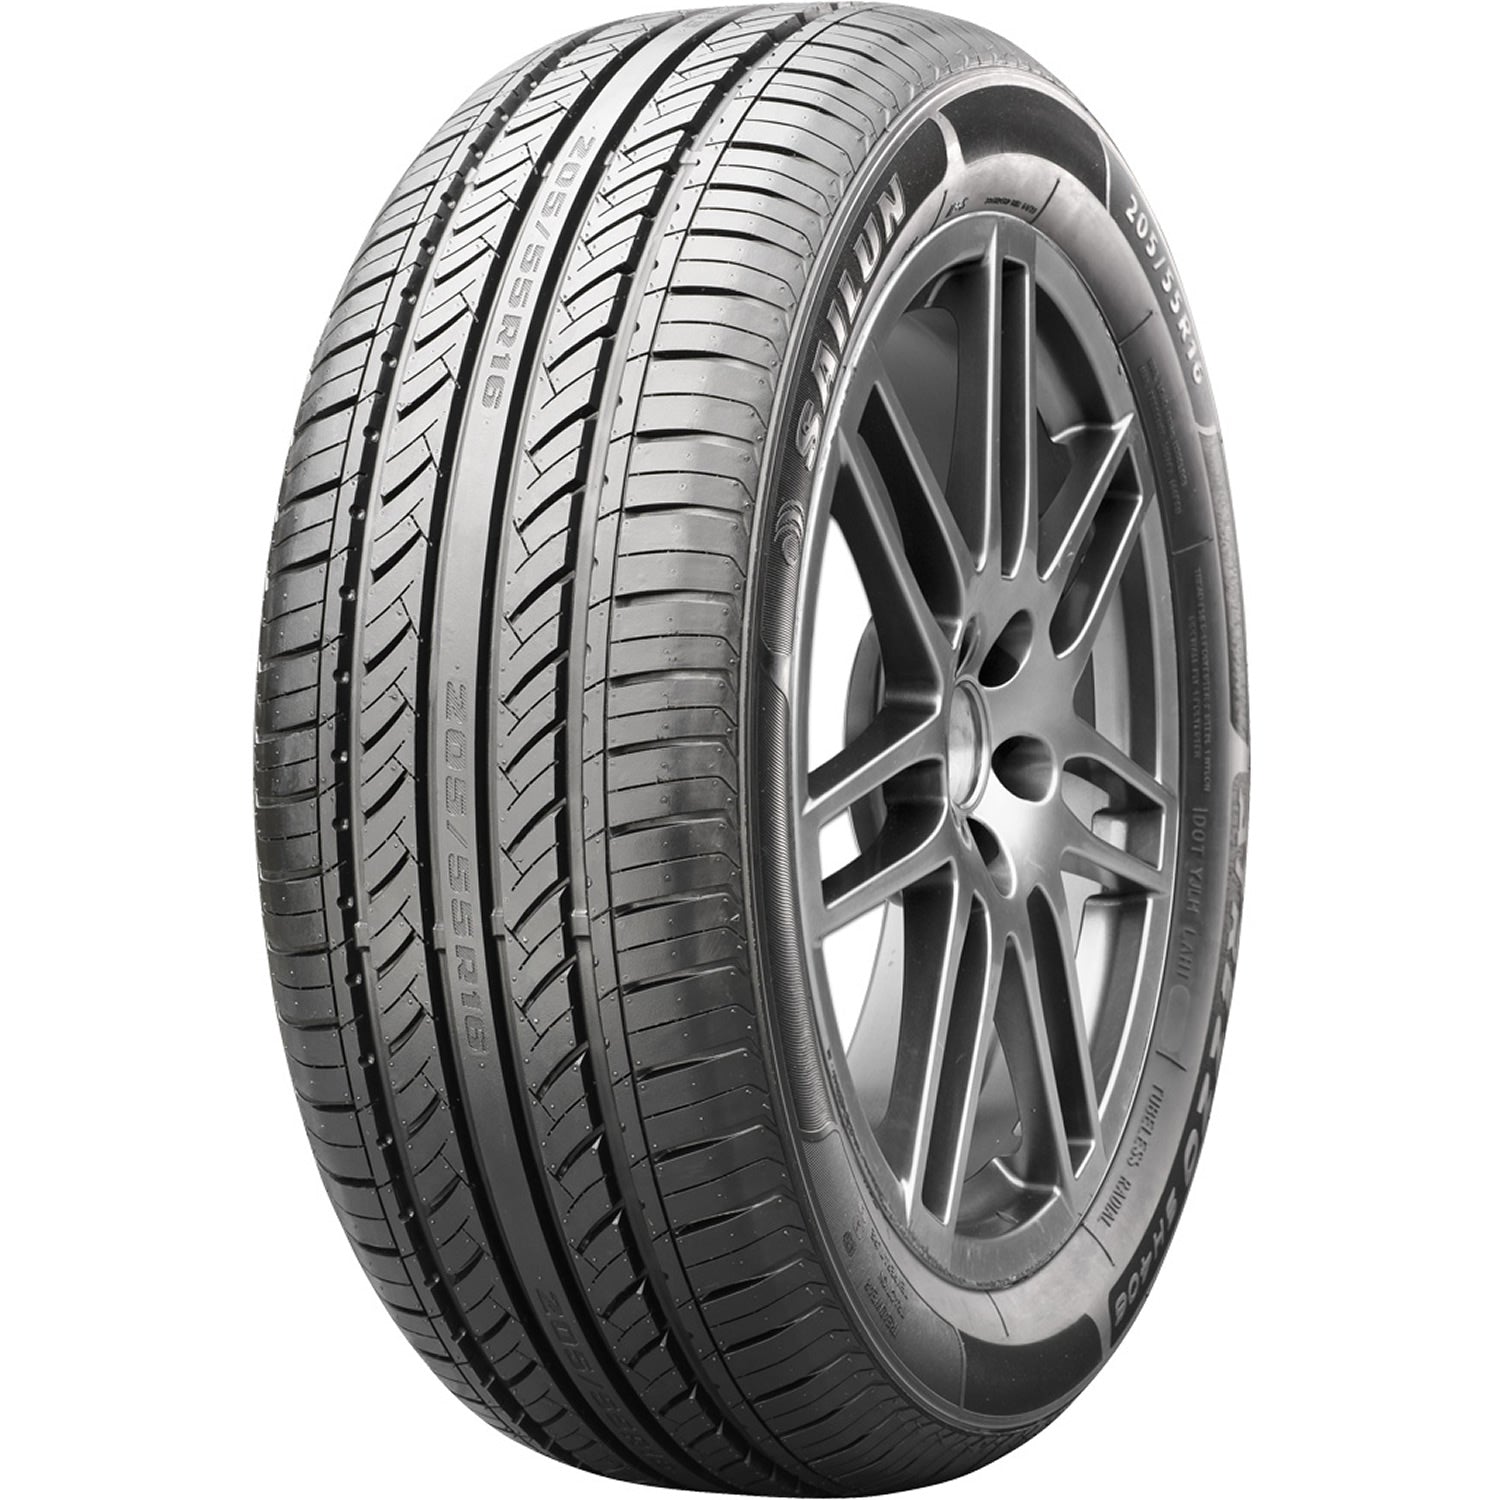 SAILUN ATREZZO SH406 195/60R15 (24.2X7.9R 15) Tires